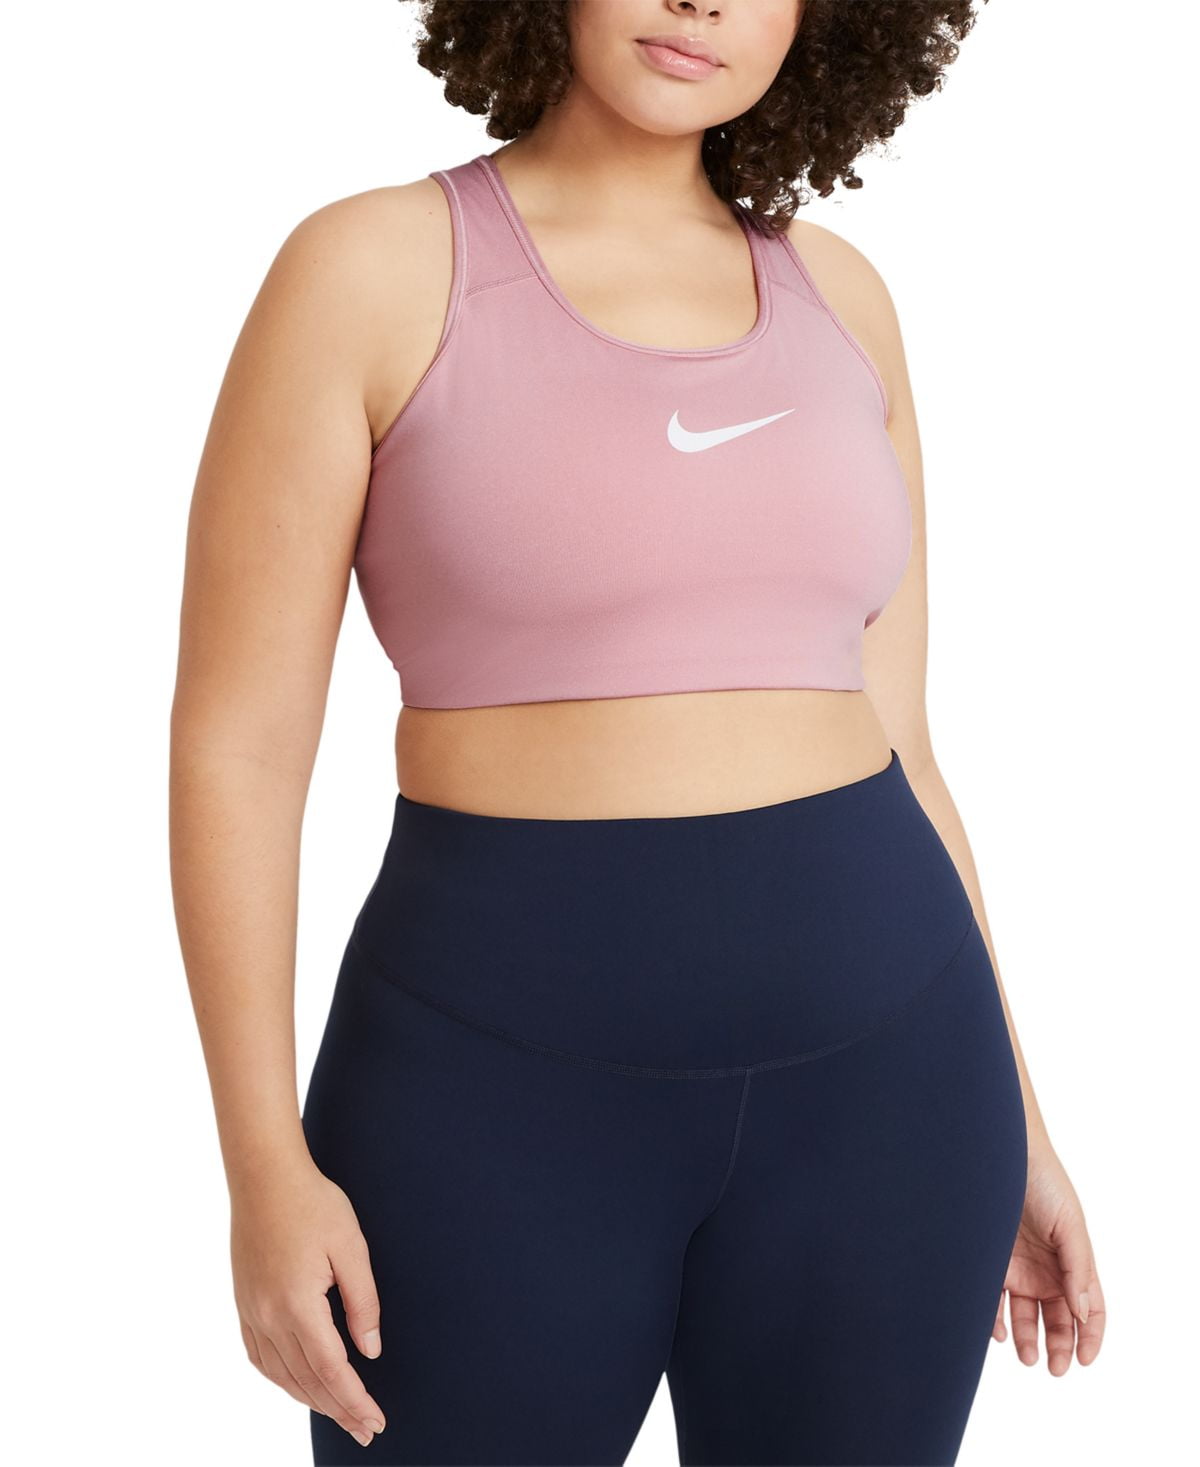 Nike Women's Dri Fit Medium Support Sports Bra Pink Size 2X